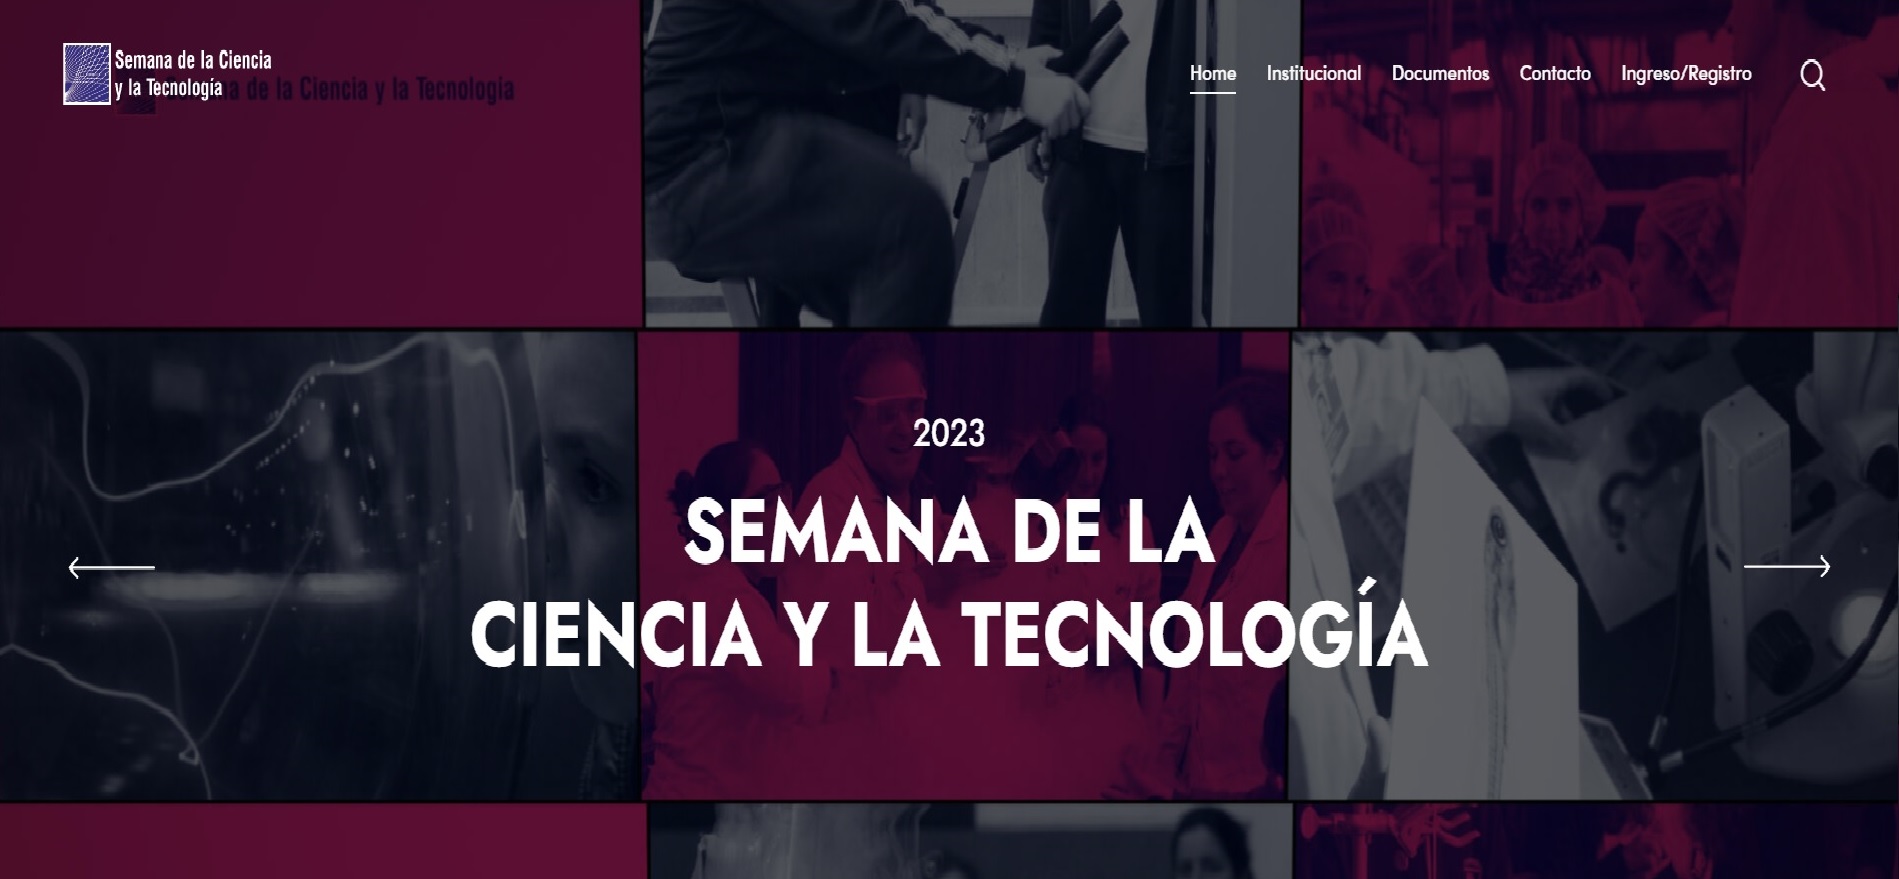 Semana de la Ciencia y la Tecnologia (MEC) - 2023_0.jpg